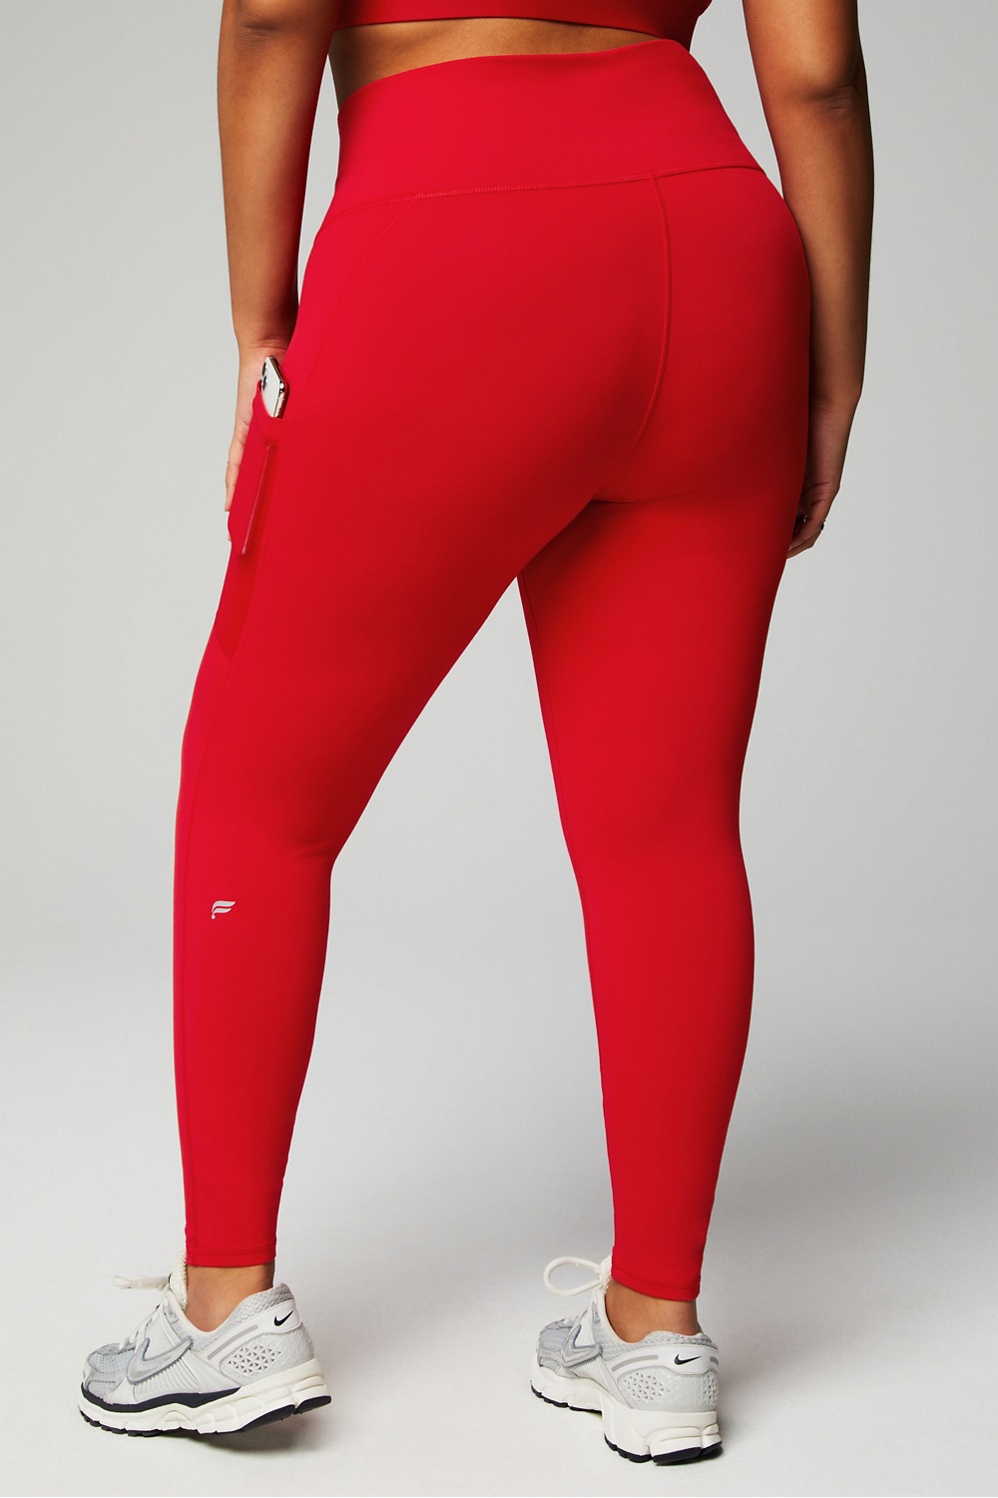 Buy Red Leggings for Women by KS KRISHNA SPORTS Online